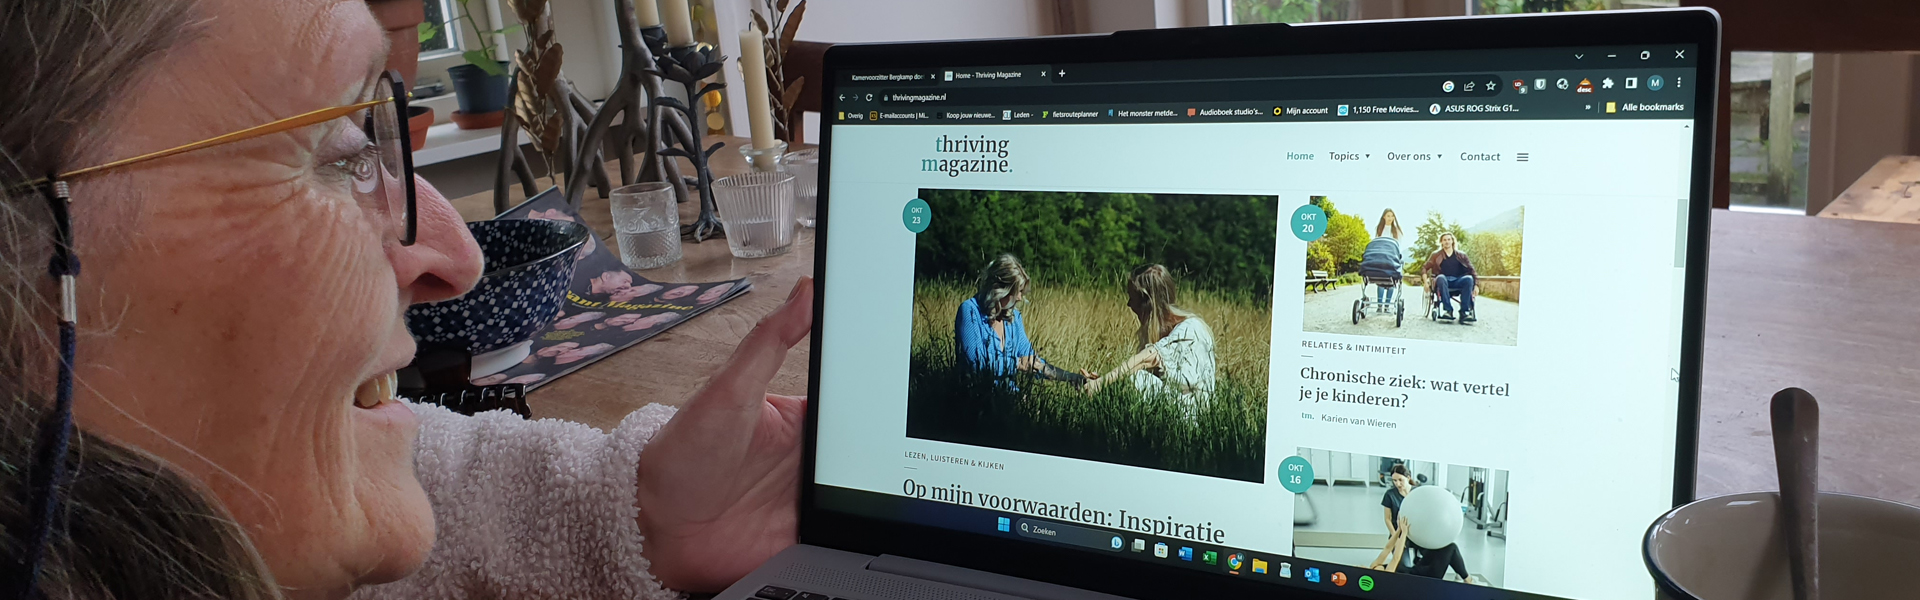 Vrouw aan tafel met laptop met daarop open de website van Thriving Magazine